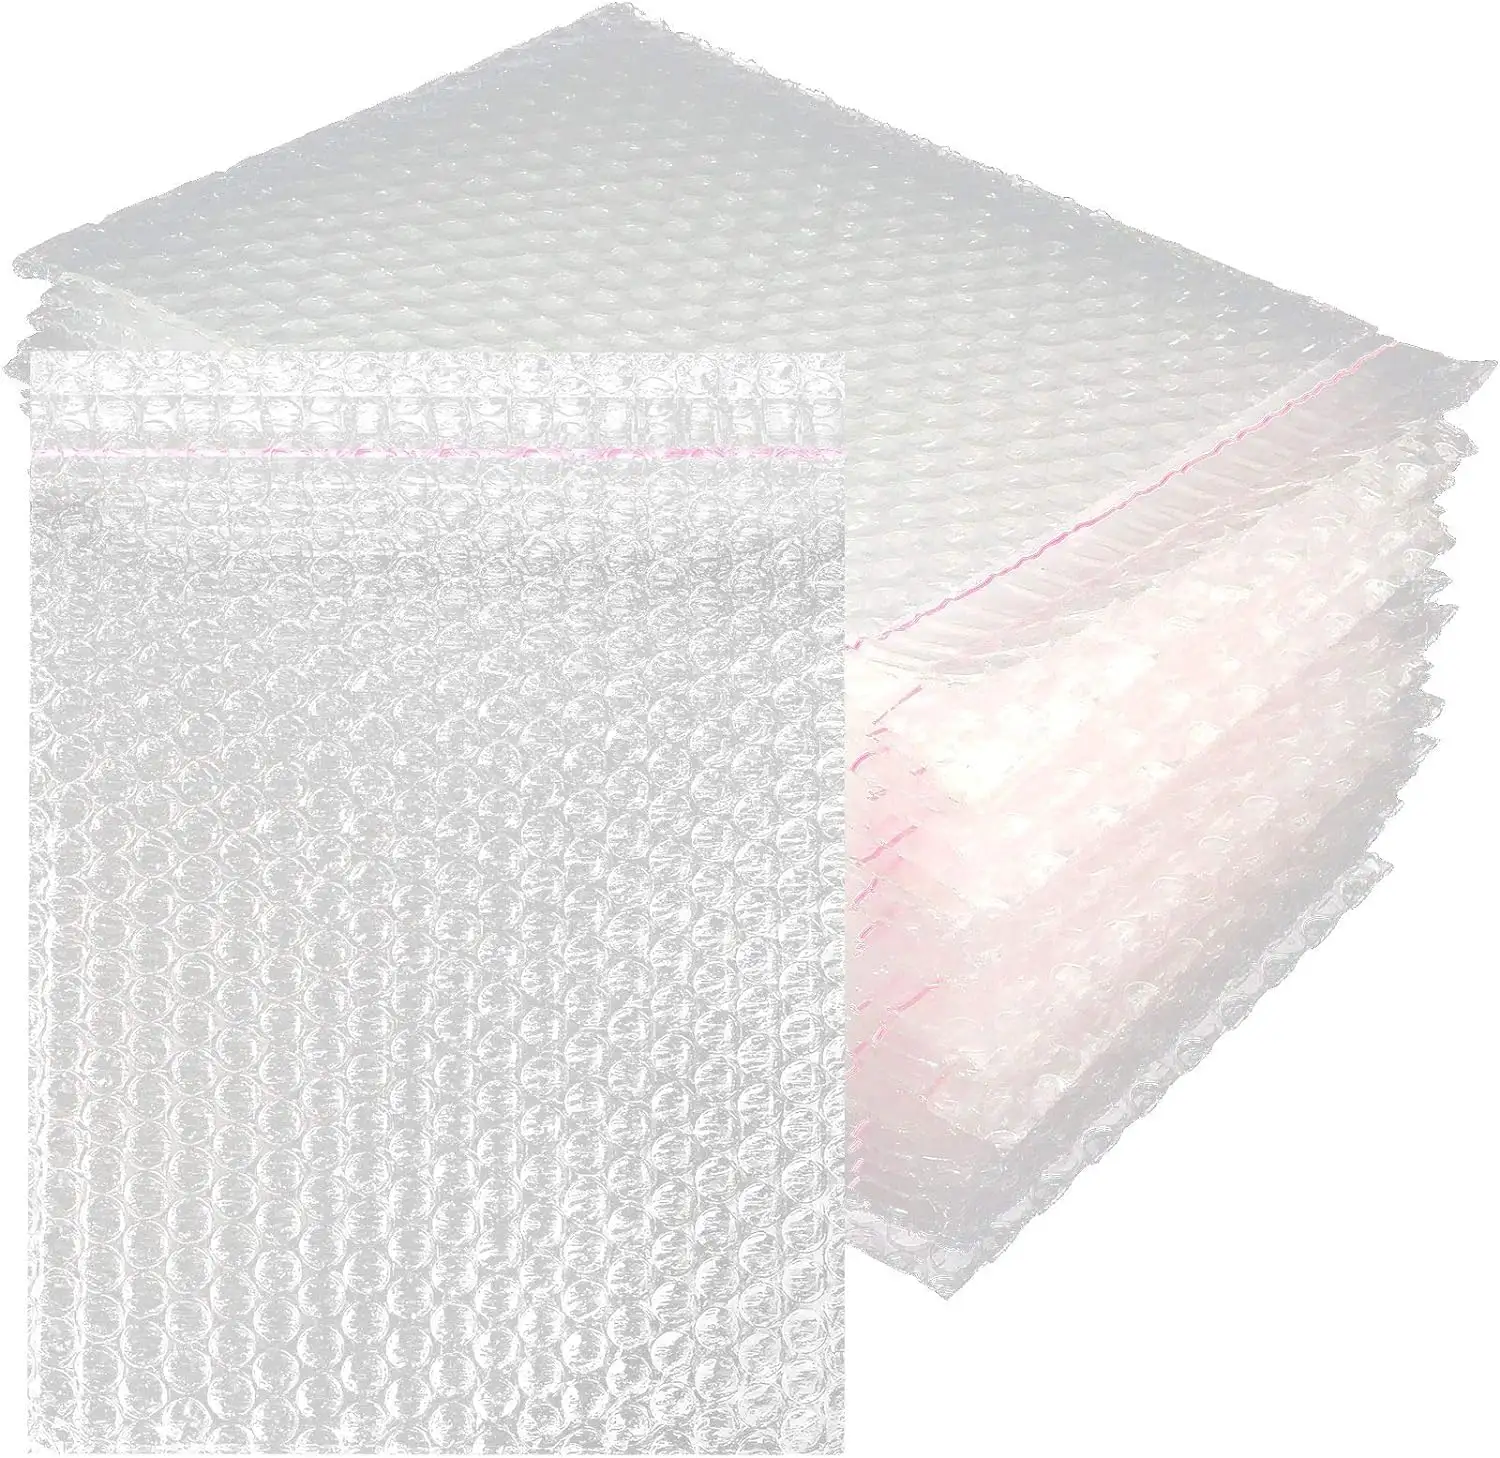 무료 샘플 하이 퀄리티 도매 충격 방지 투명 100% 새로운 원료 포장 공기 버블 필름 가방